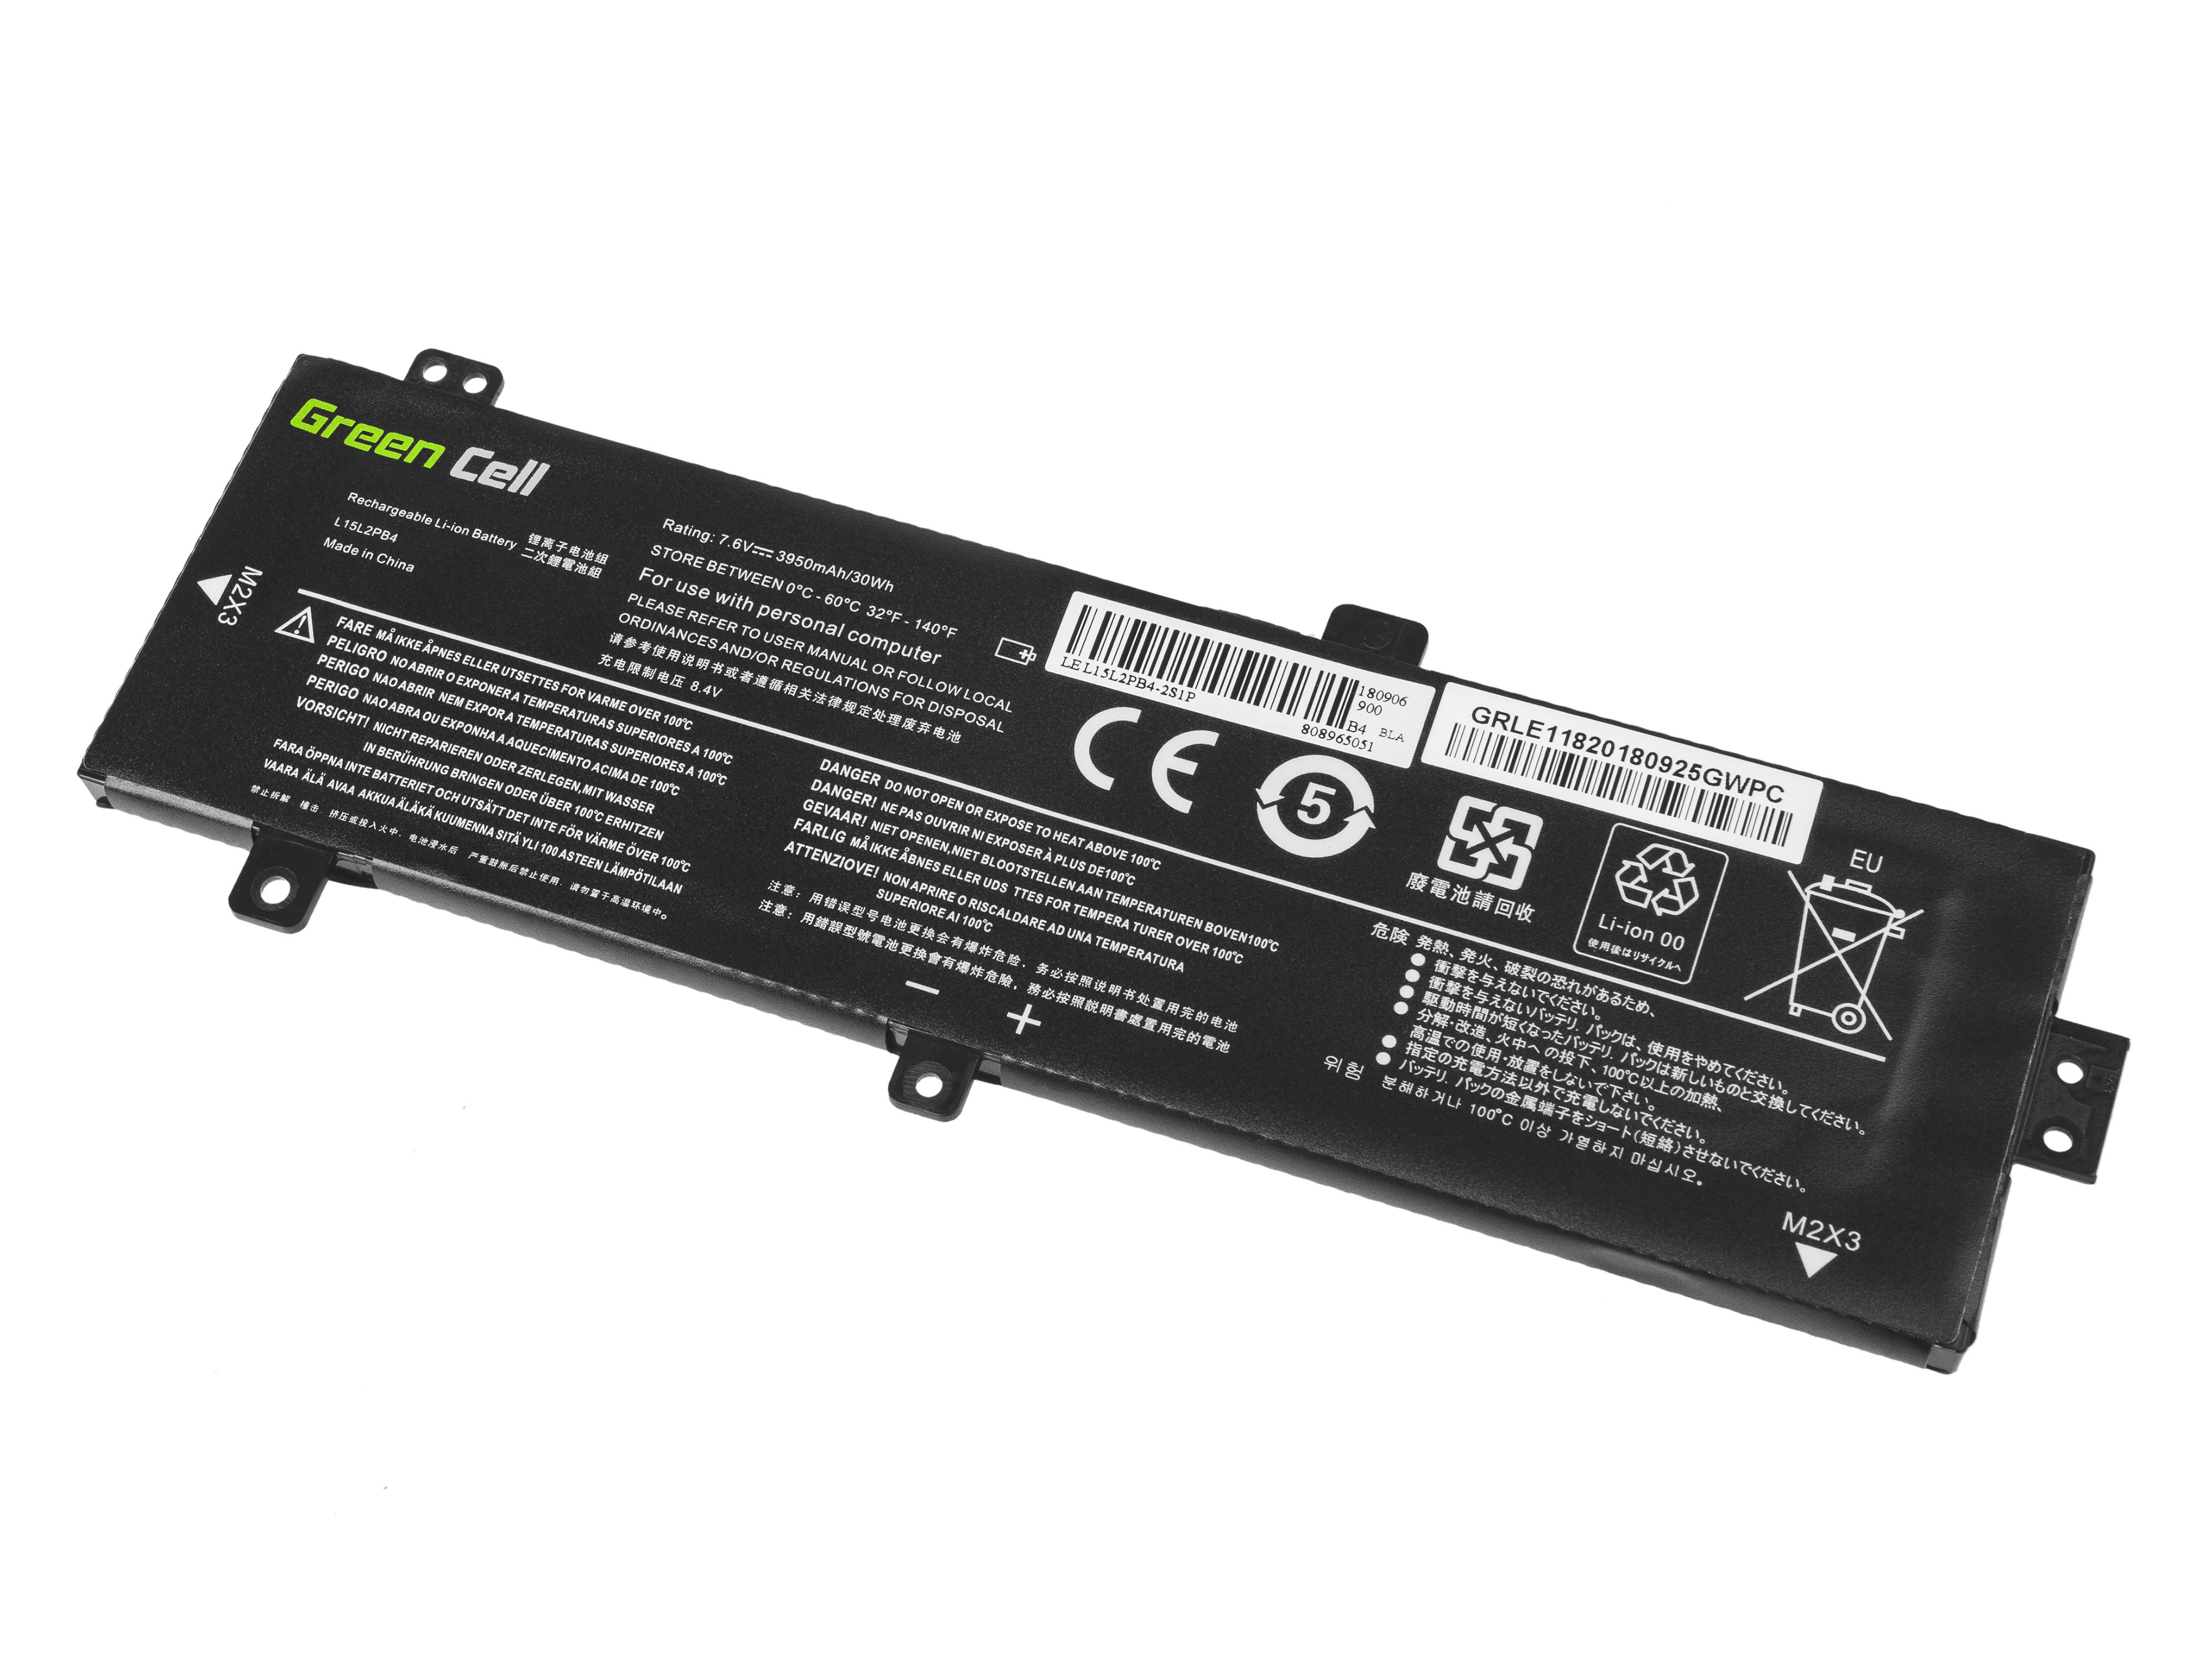 Green Cell laptopbatteri til Lenovo V310 V310-14  / 3500 mAh 7.6 V